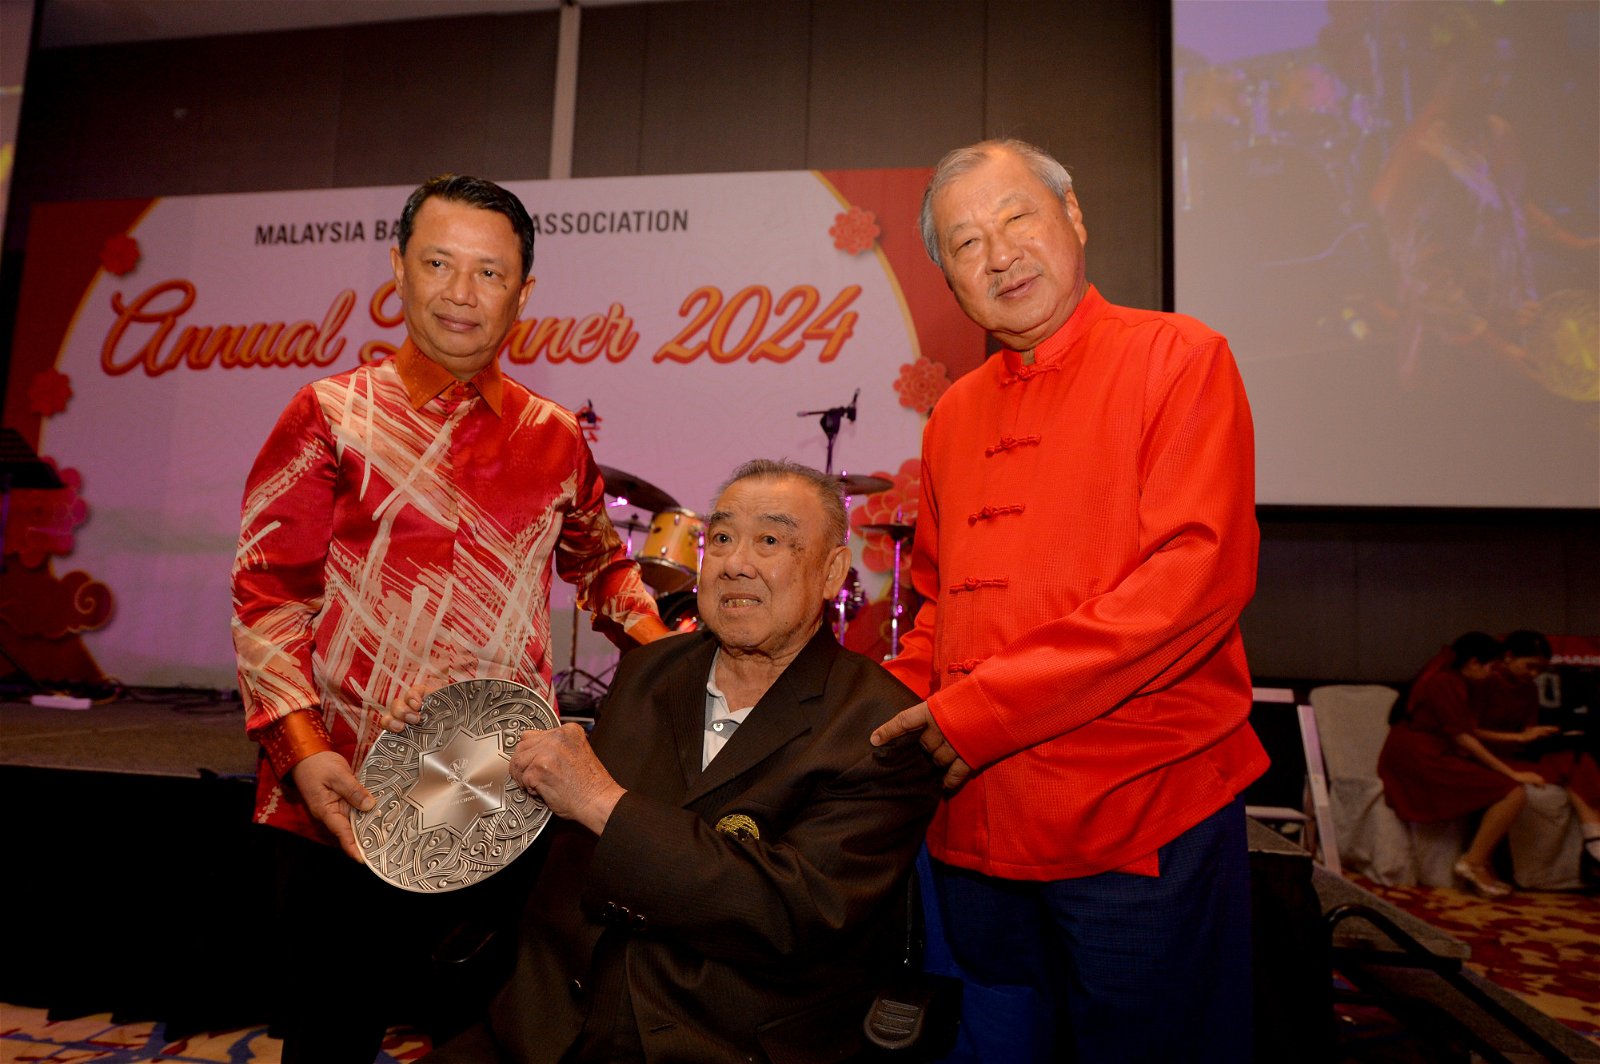 大马篮总特颁发终身成就奖给杨自福，以表扬他在过去数十年为大马篮坛所做出的贡献。